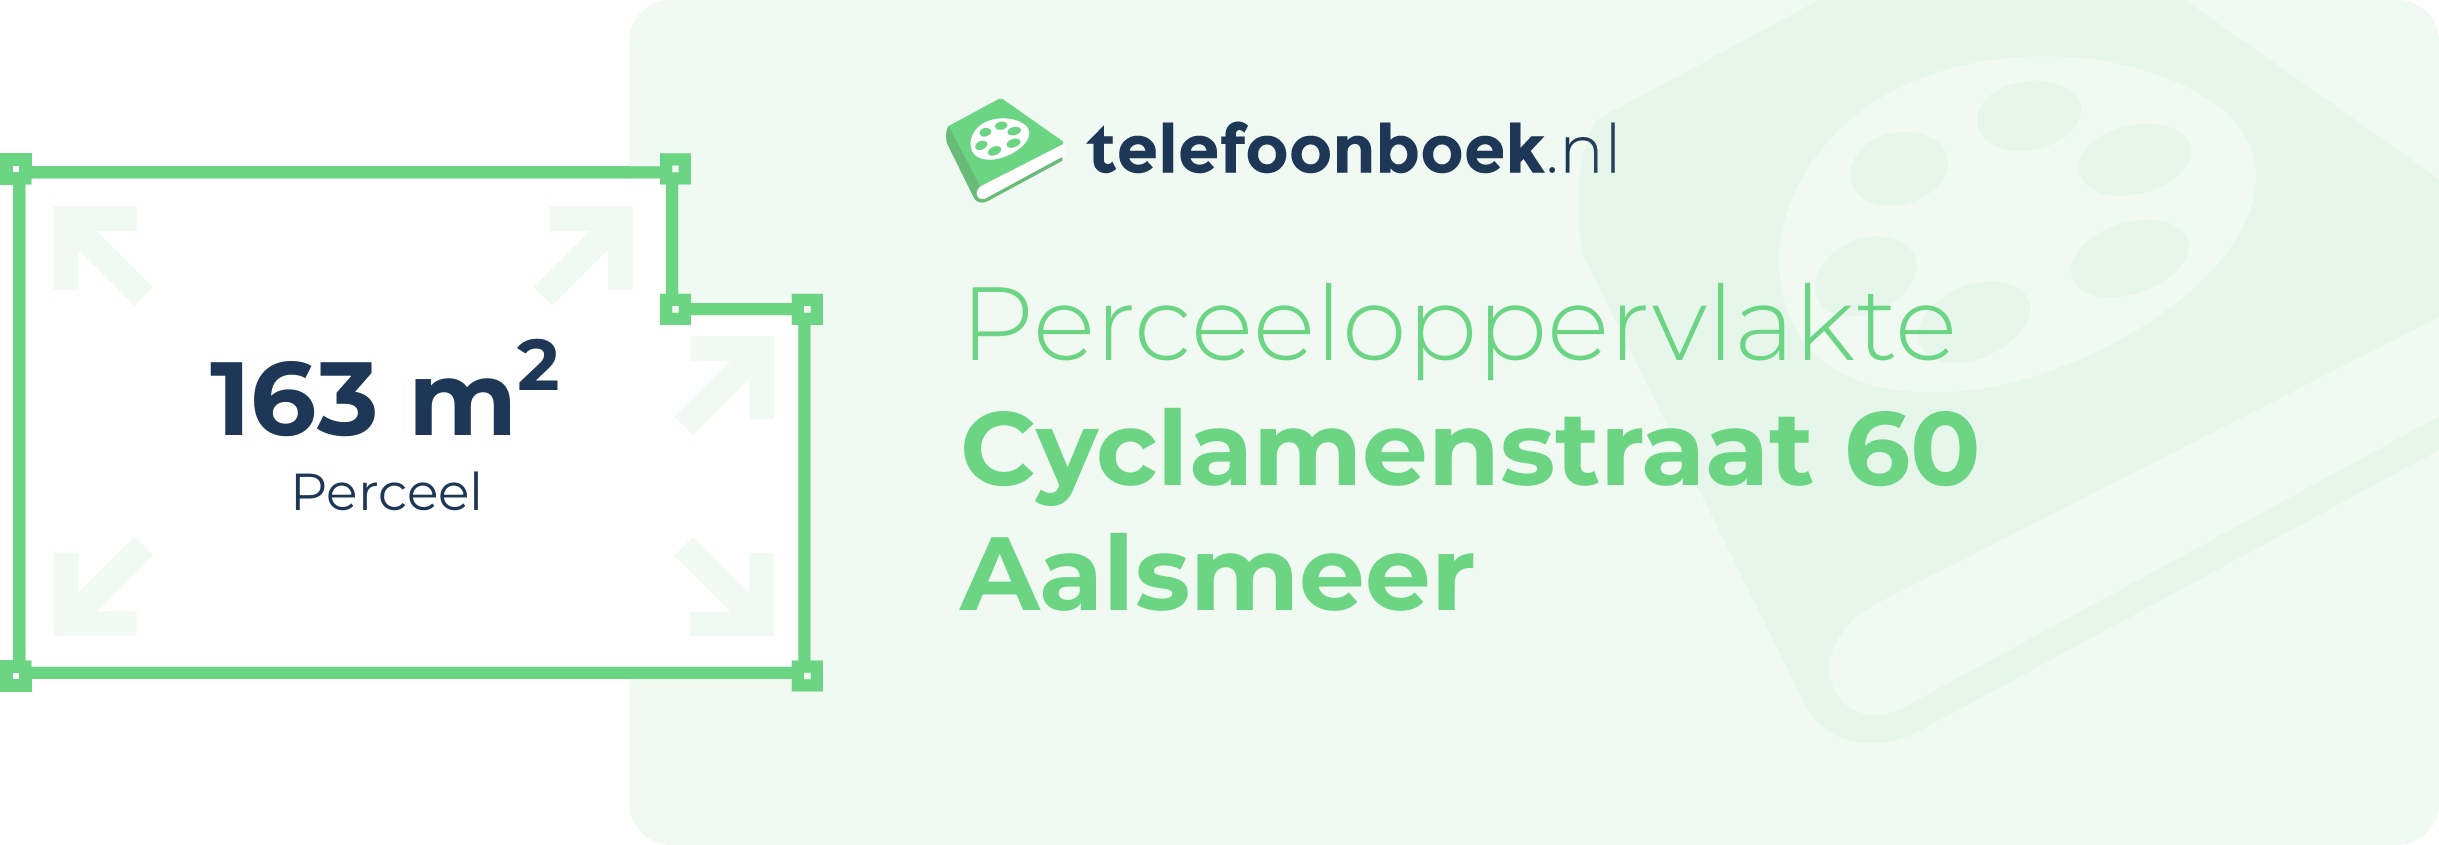 Perceeloppervlakte Cyclamenstraat 60 Aalsmeer